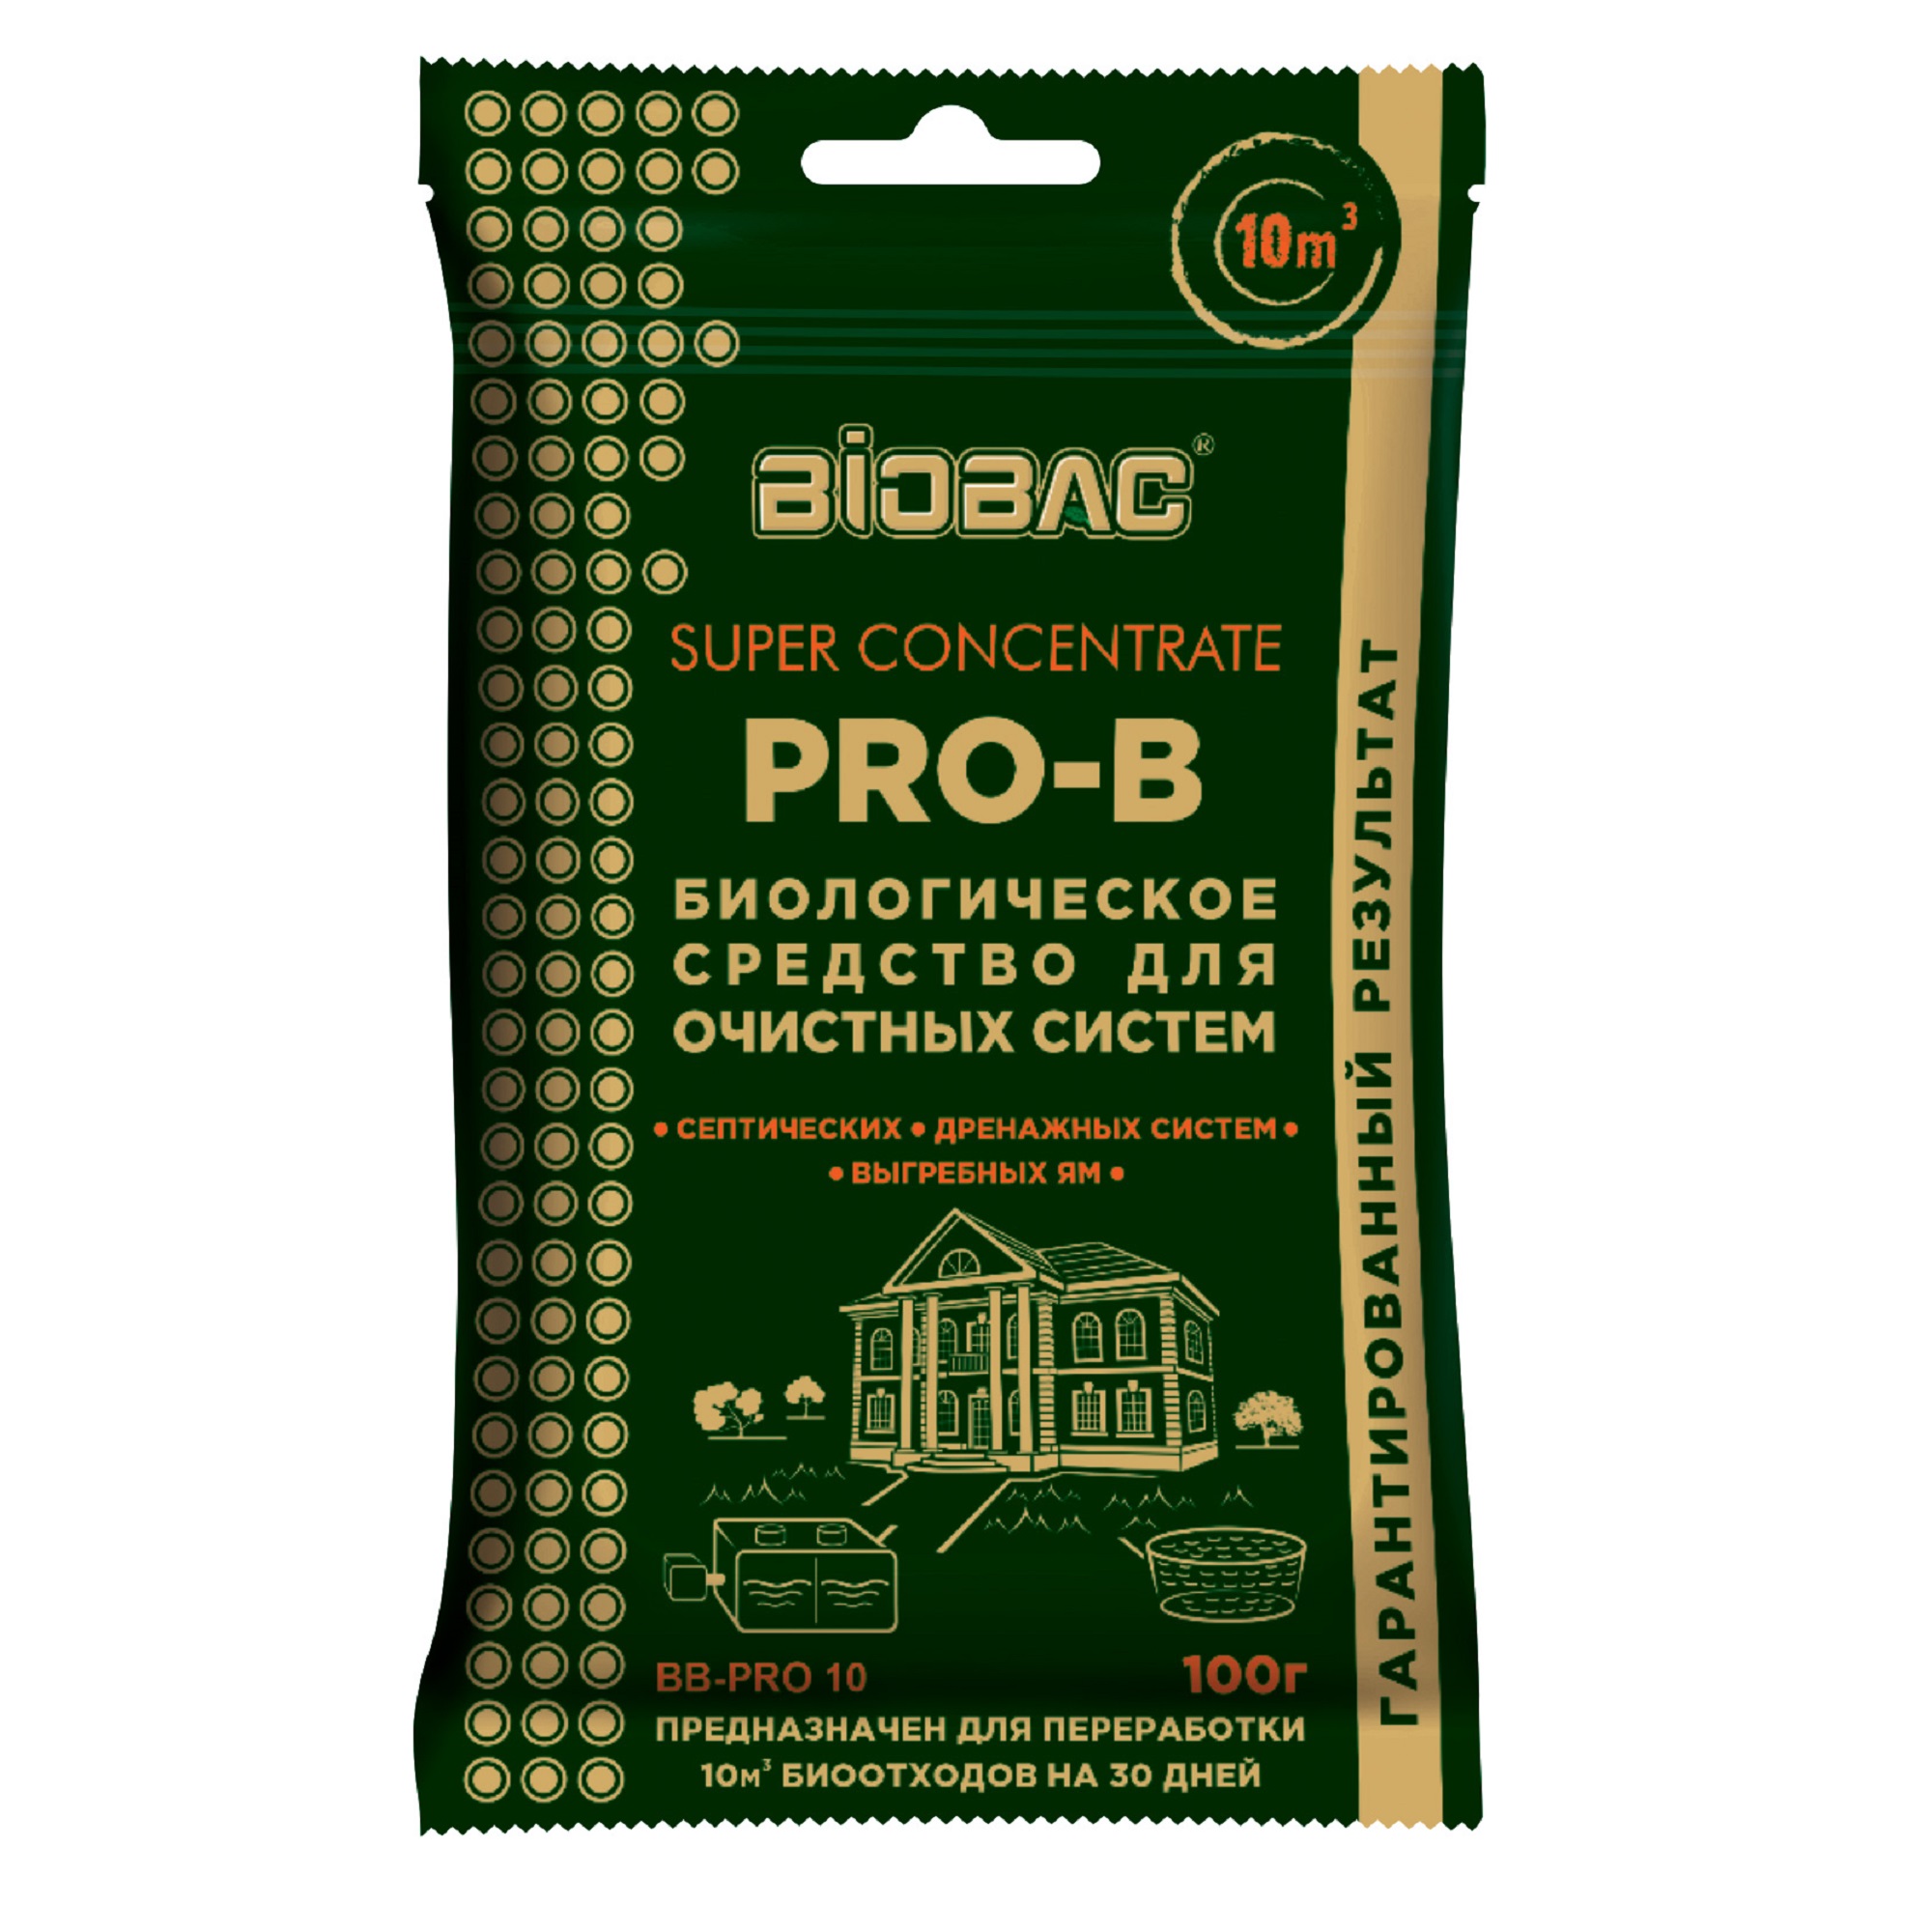 Средство биологическое Биобак для очистных систем 100 гр. средство биологическое для очистки водоёмов биобак bb p100